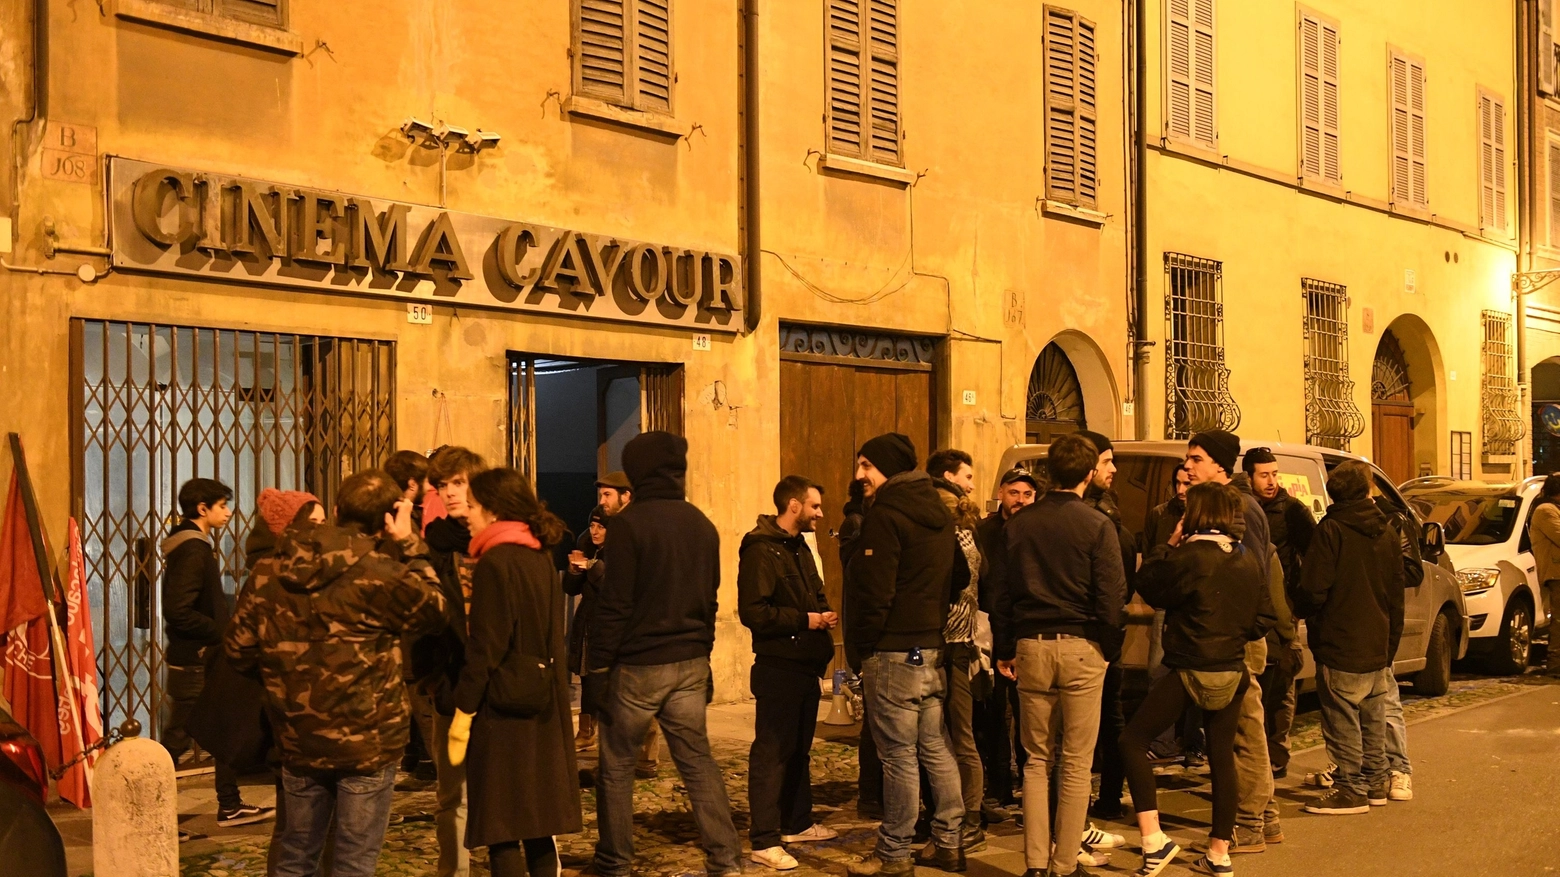 Il cinema Cavour occupato (Foto Fiocchi)